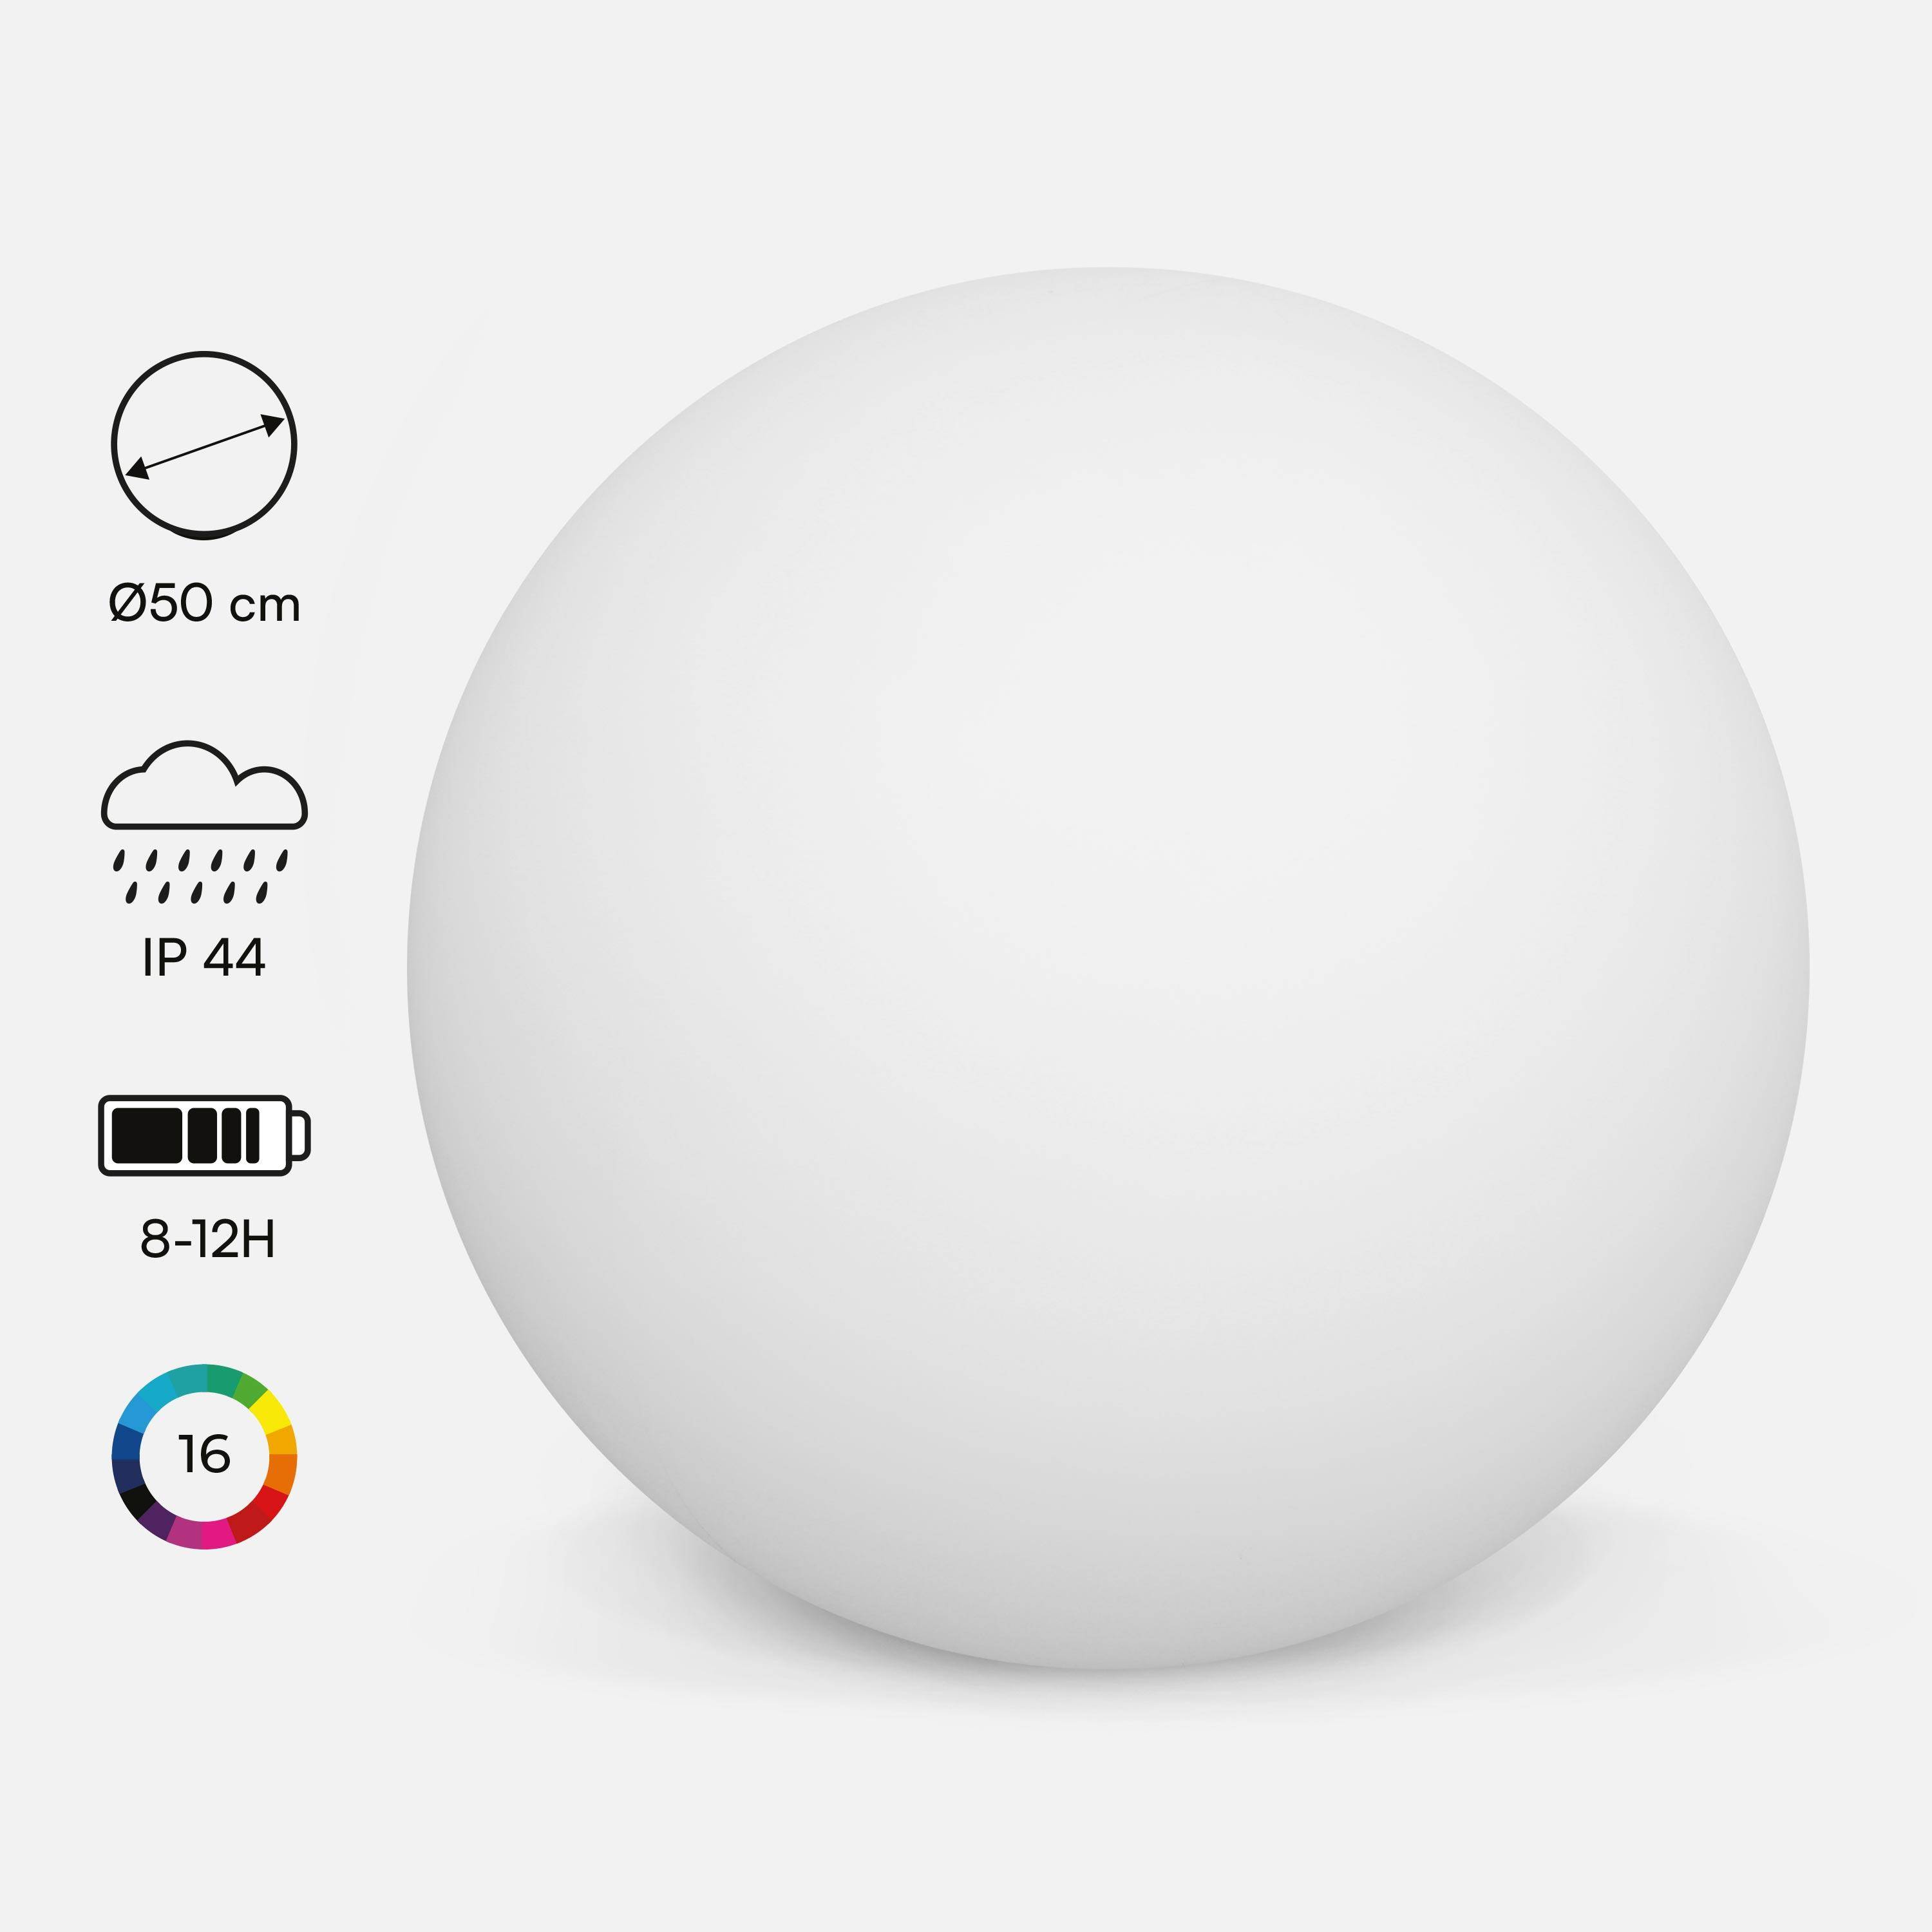 LED-Kugel 50cm - Dekorative Leuchtkugel, 16 Farben, Ø 50 cm, kabelloses Induktions-Ladegerät Photo1